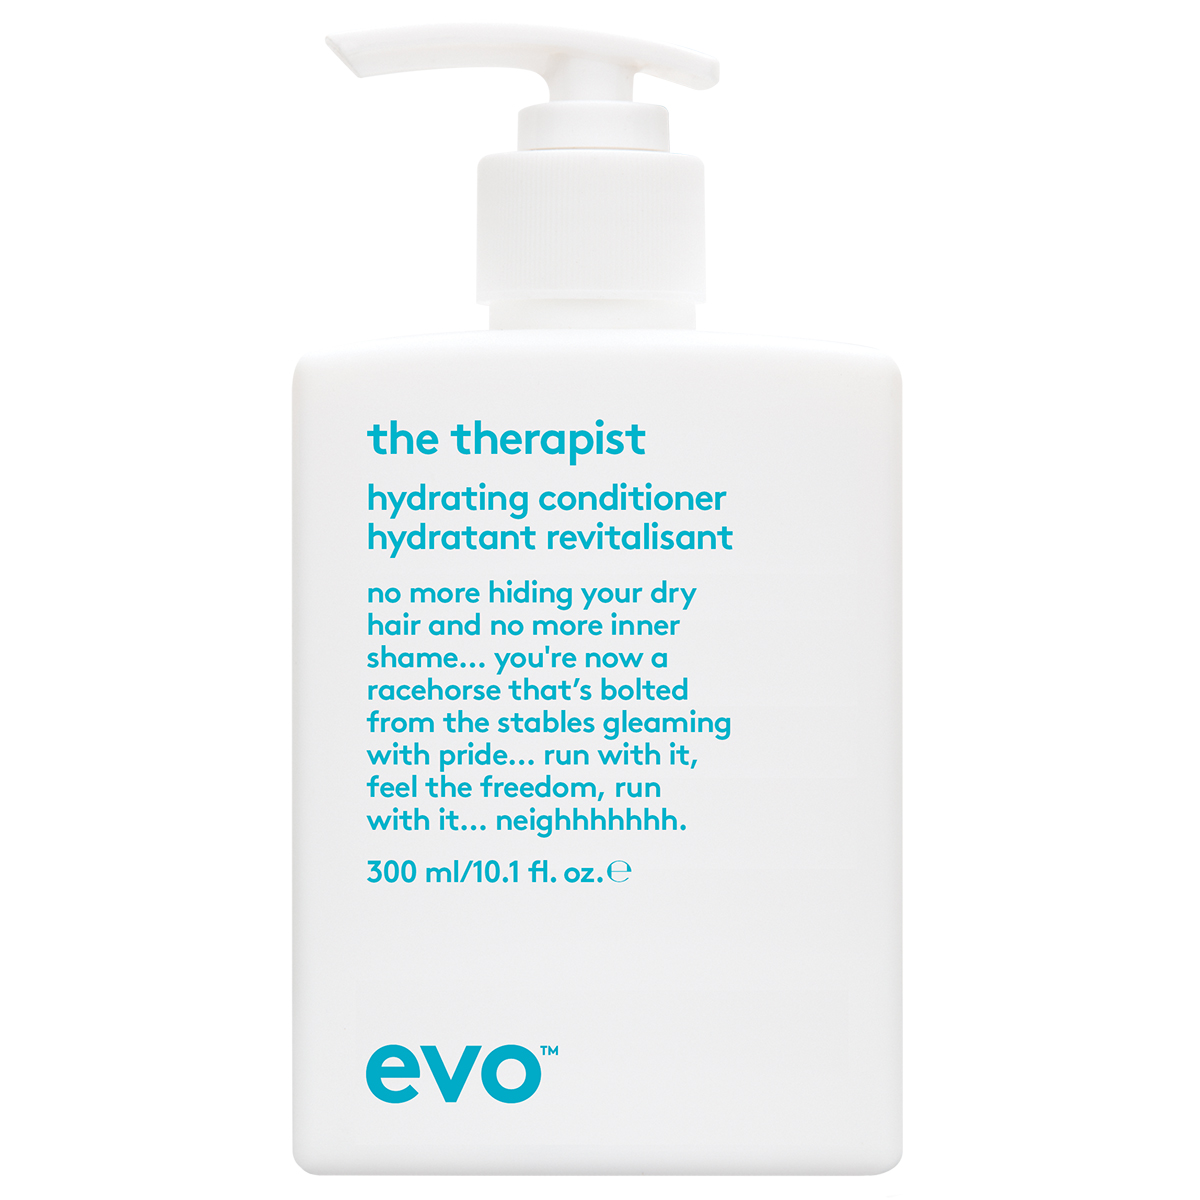 Bilde av Hydrate The Therapist Calming Conditioner, 300 Ml Evo Conditioner